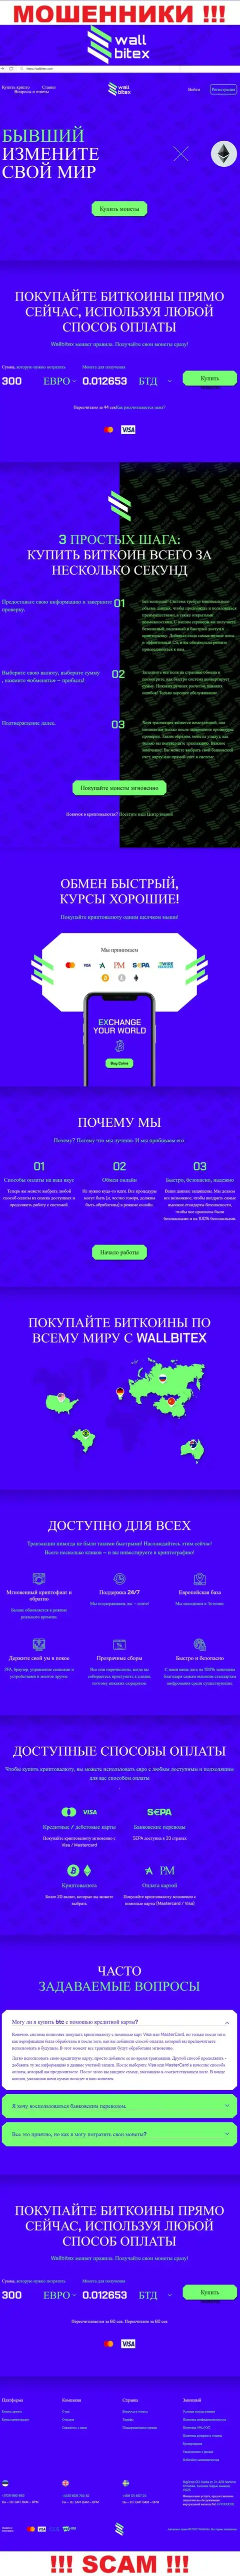 WallBitex Com - это официальный сайт мошеннической организации WallBitex